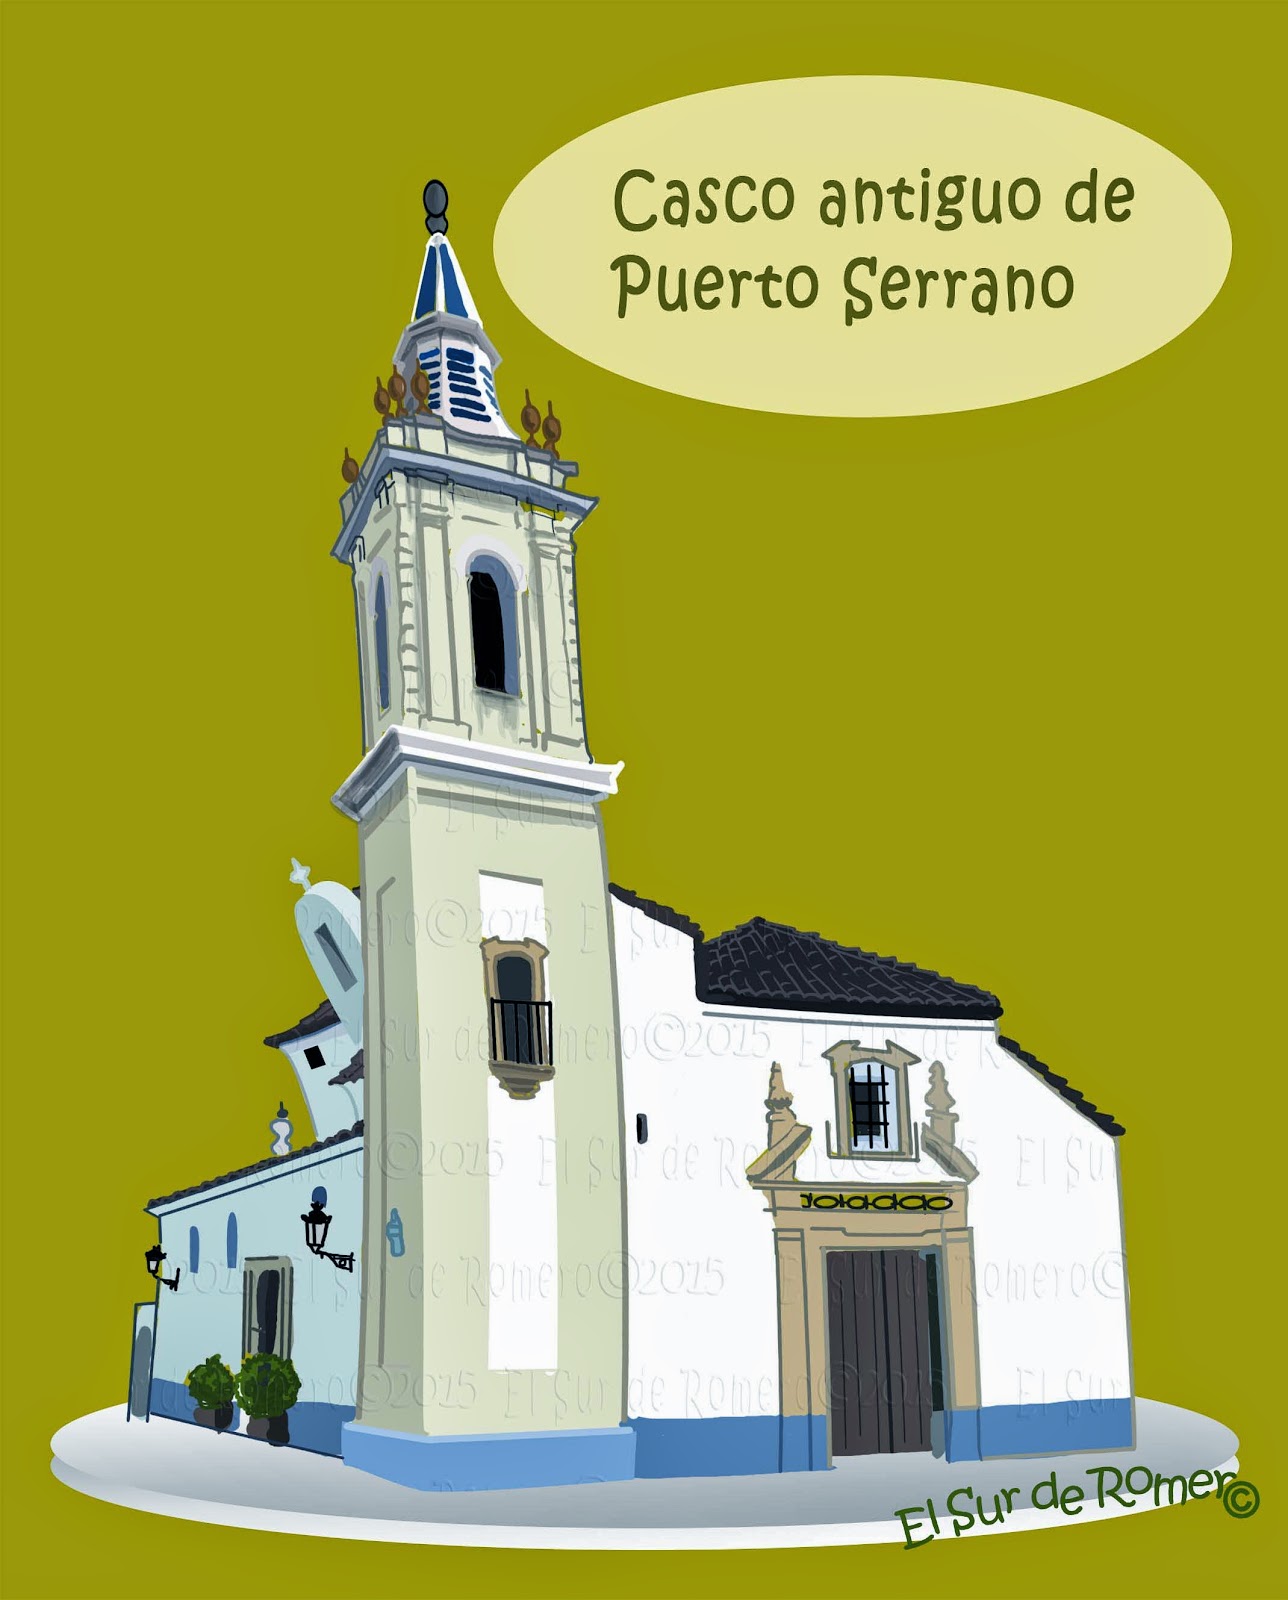 <img src="Santa Maria Magdalena.jpg" alt="Iglesia en dibujo"/>